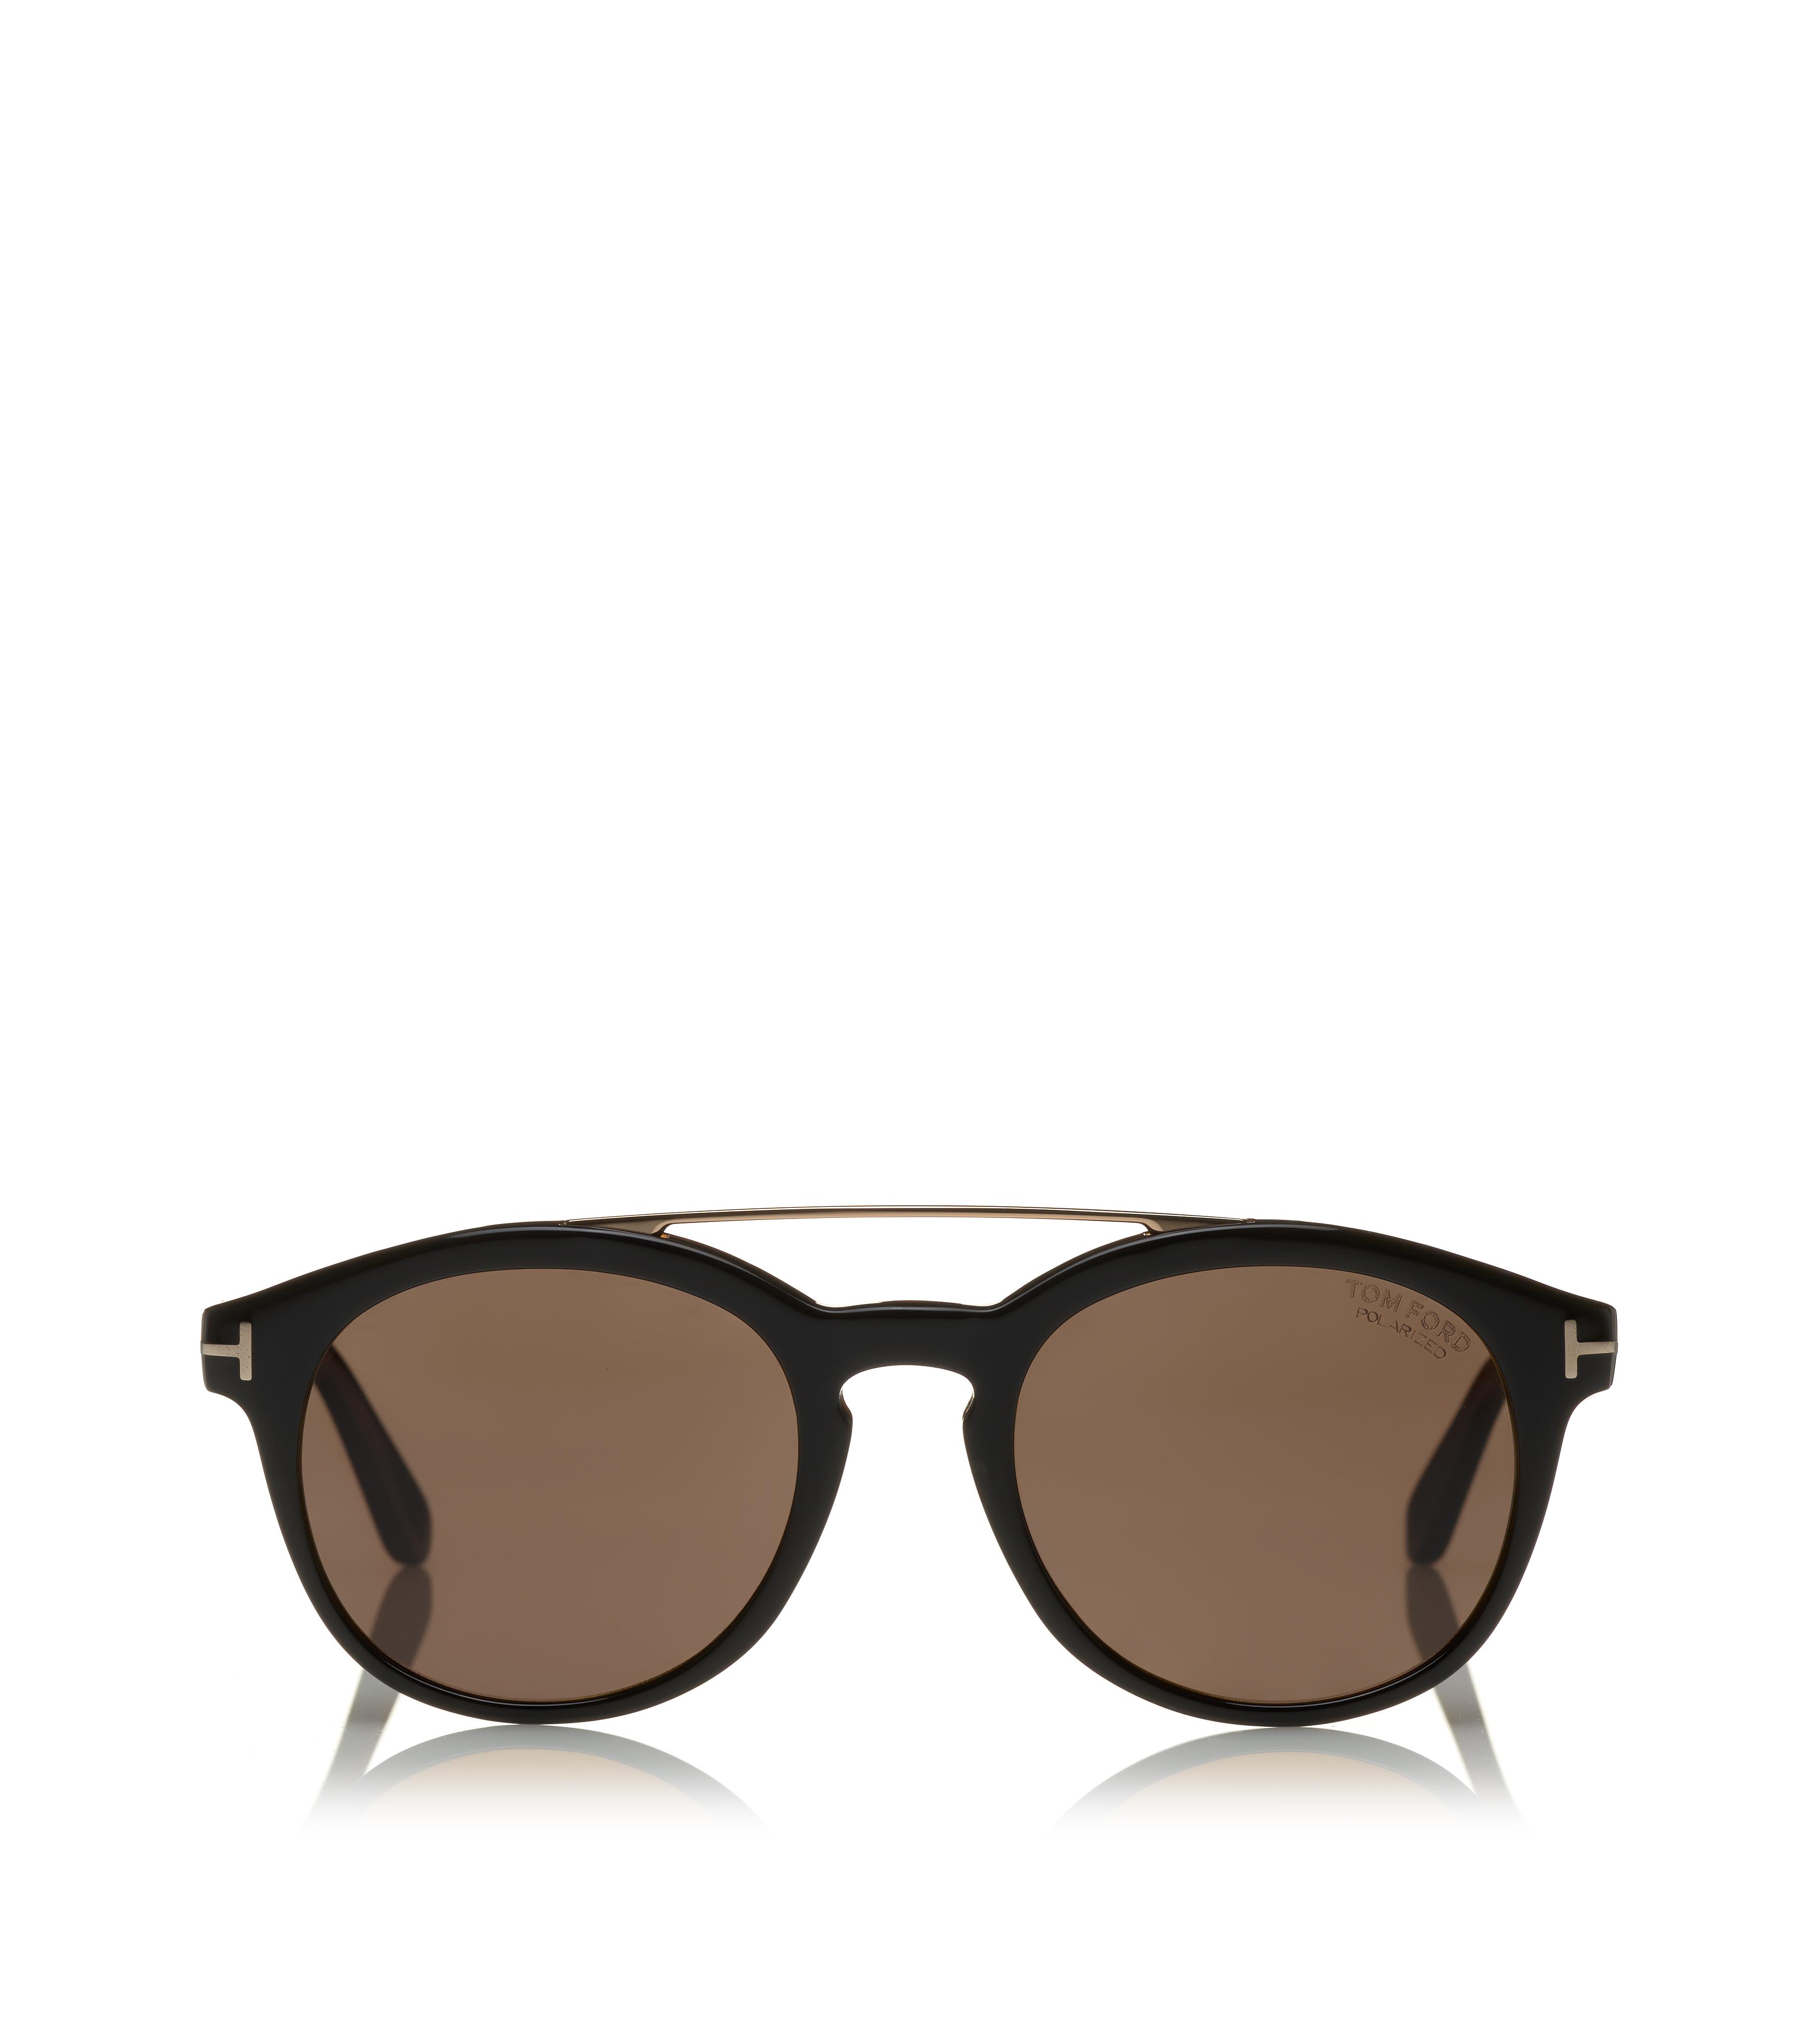 Sunglasses - Sunglasses by TOM FORD - Designer Sunglasses for Men ...